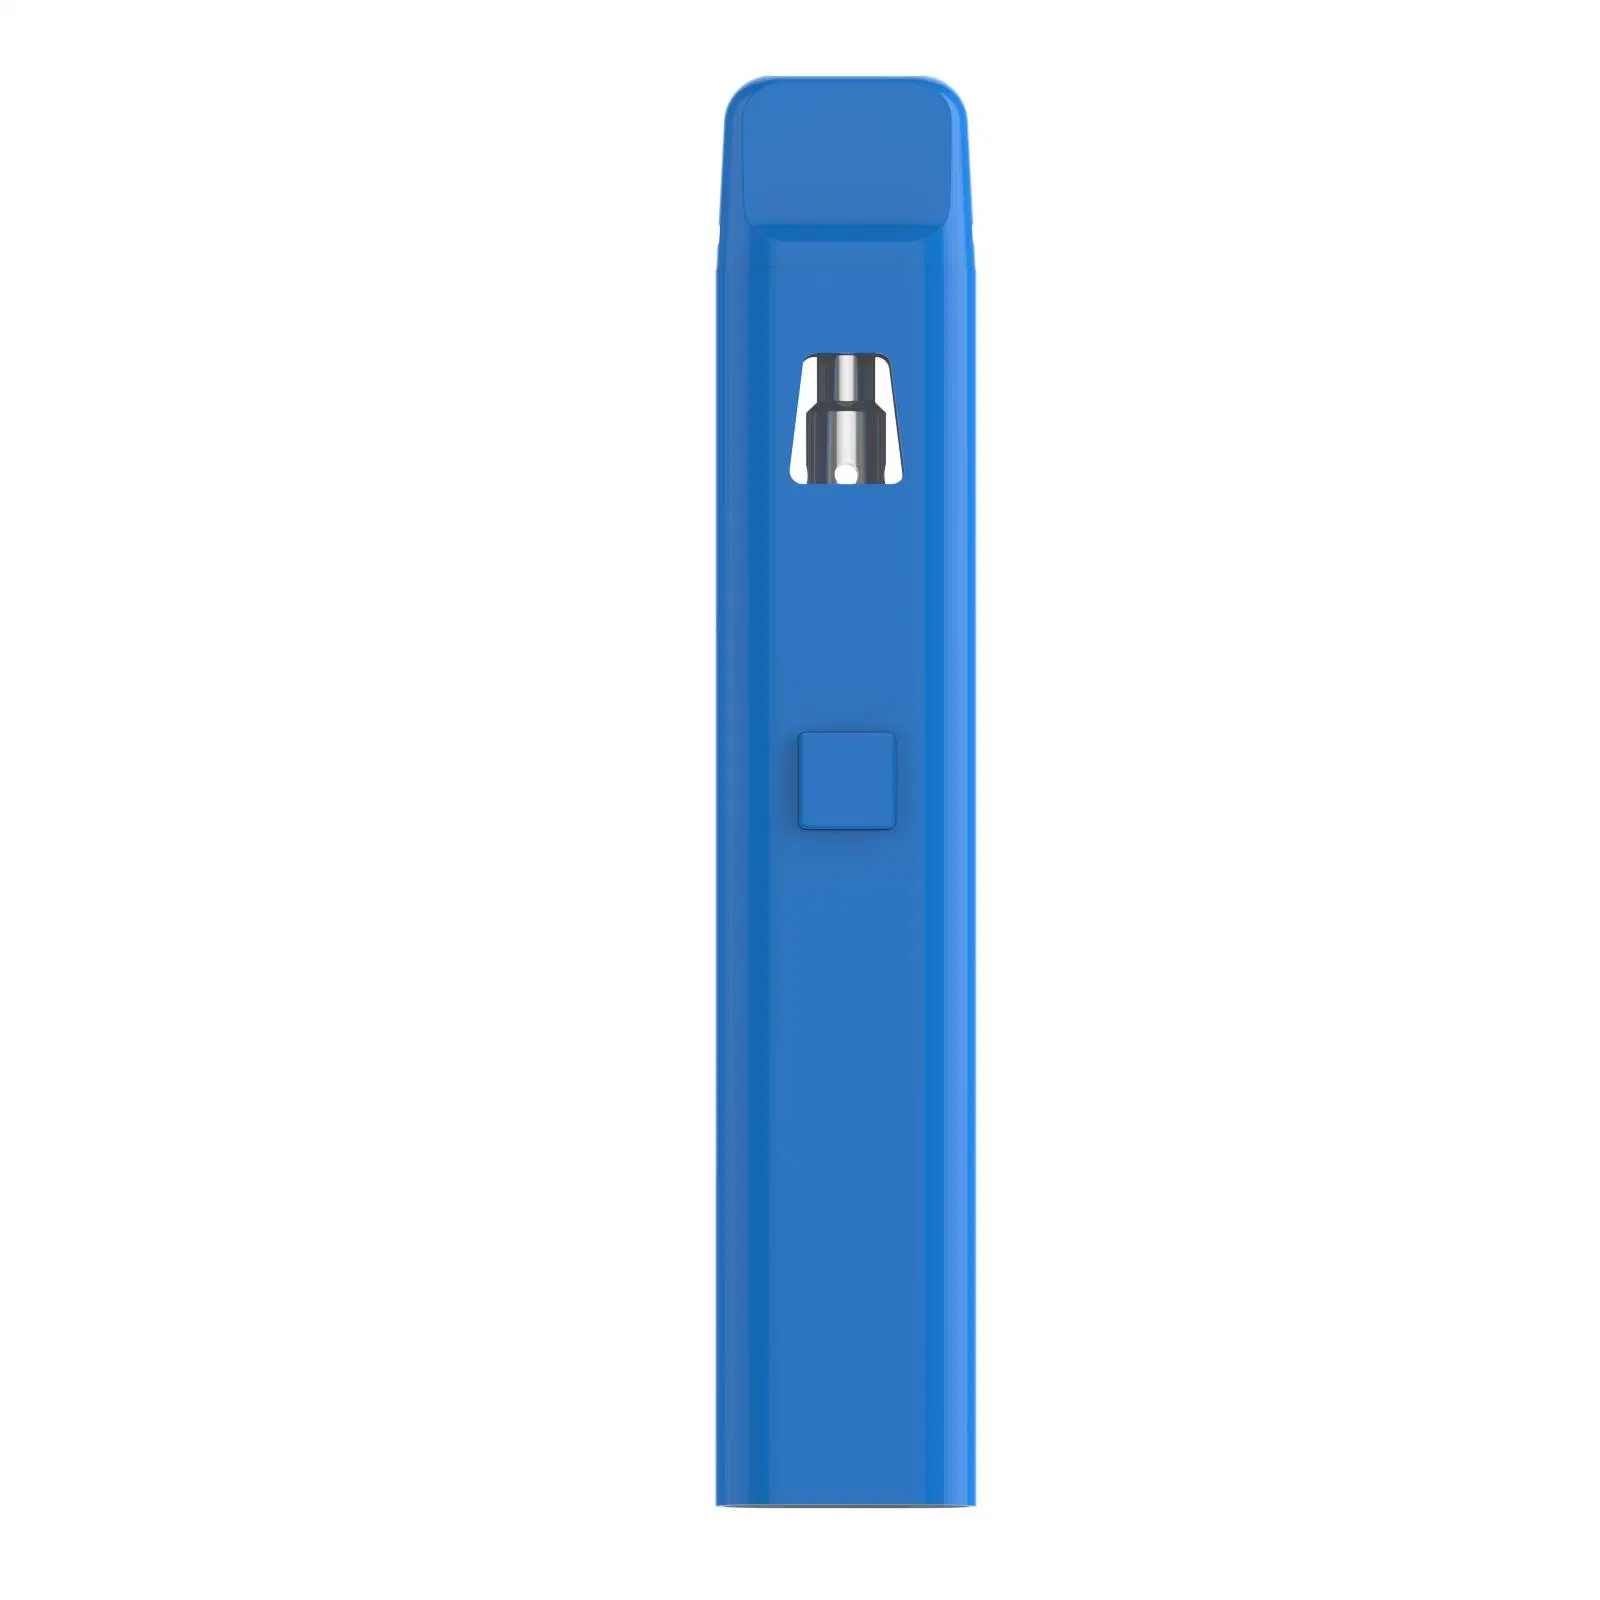 Factory Wholesale/Supplier Price Thick Oil Disposable/Chargeable Vape Pen 1m/2ml Rechargeable Empty Device Cartridge Vape Pen